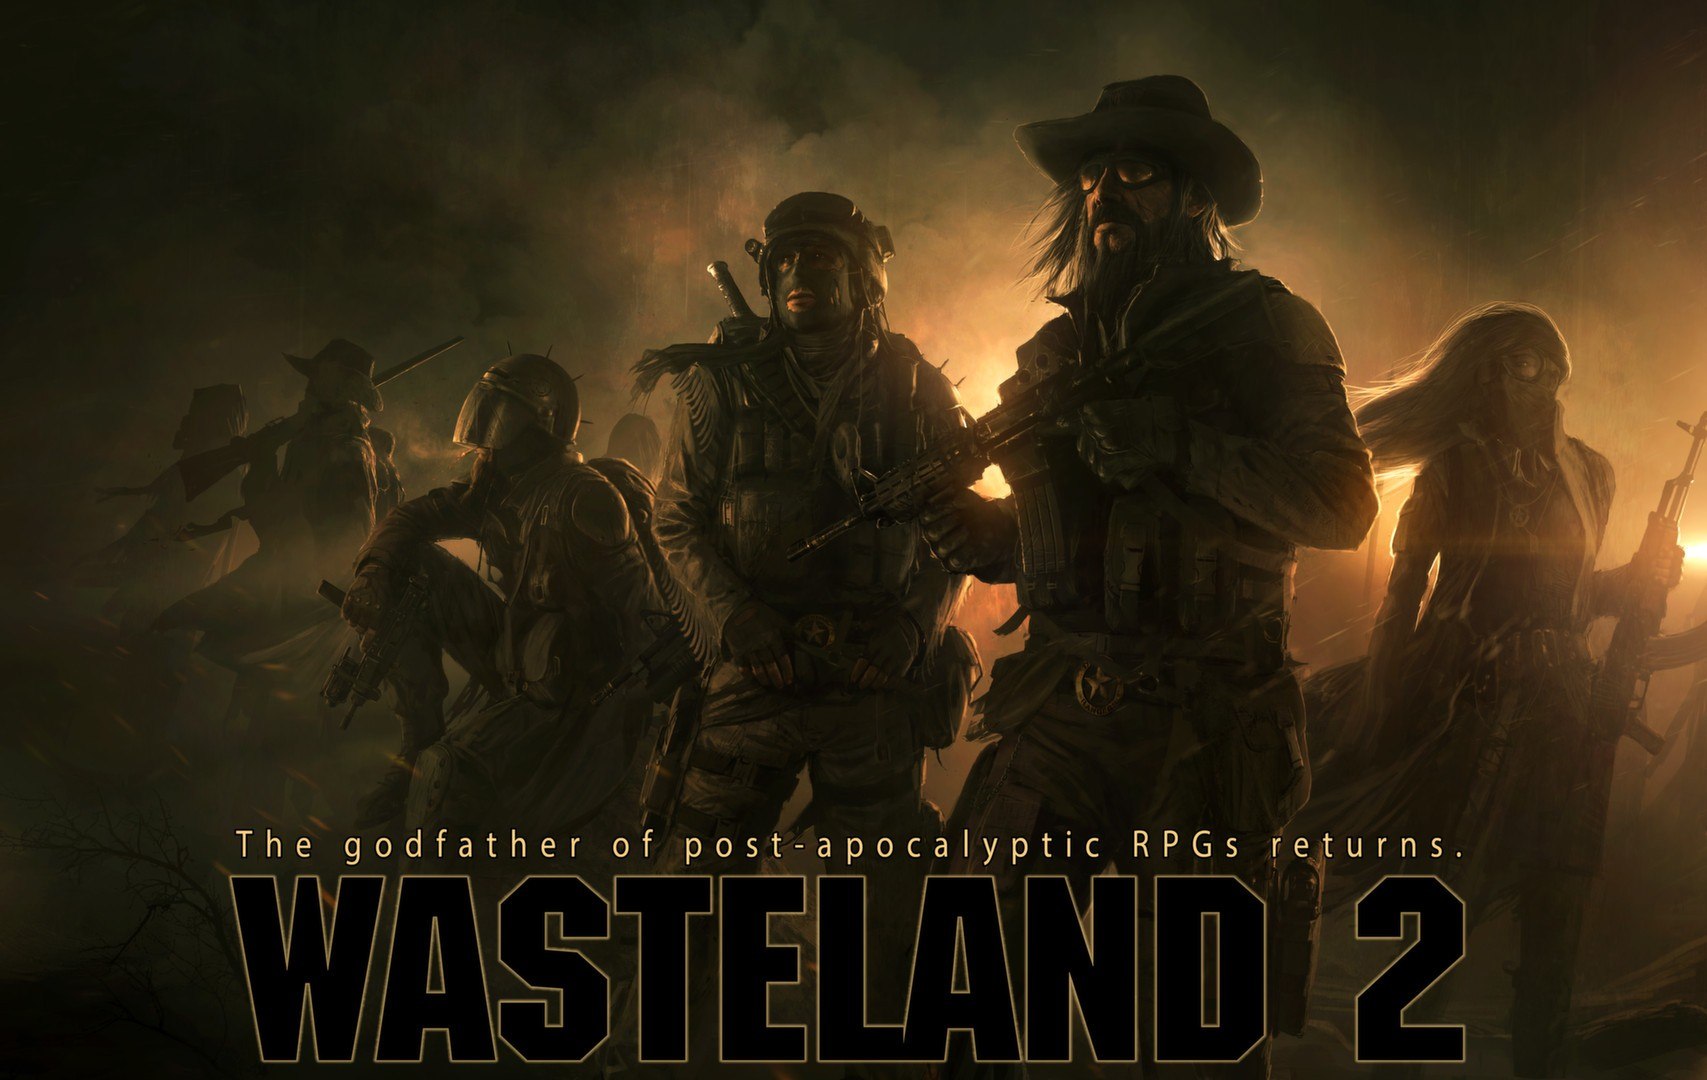 Wasteland 2: Director's Cut - Classic Edition Steam CD Key, 11.19 usd